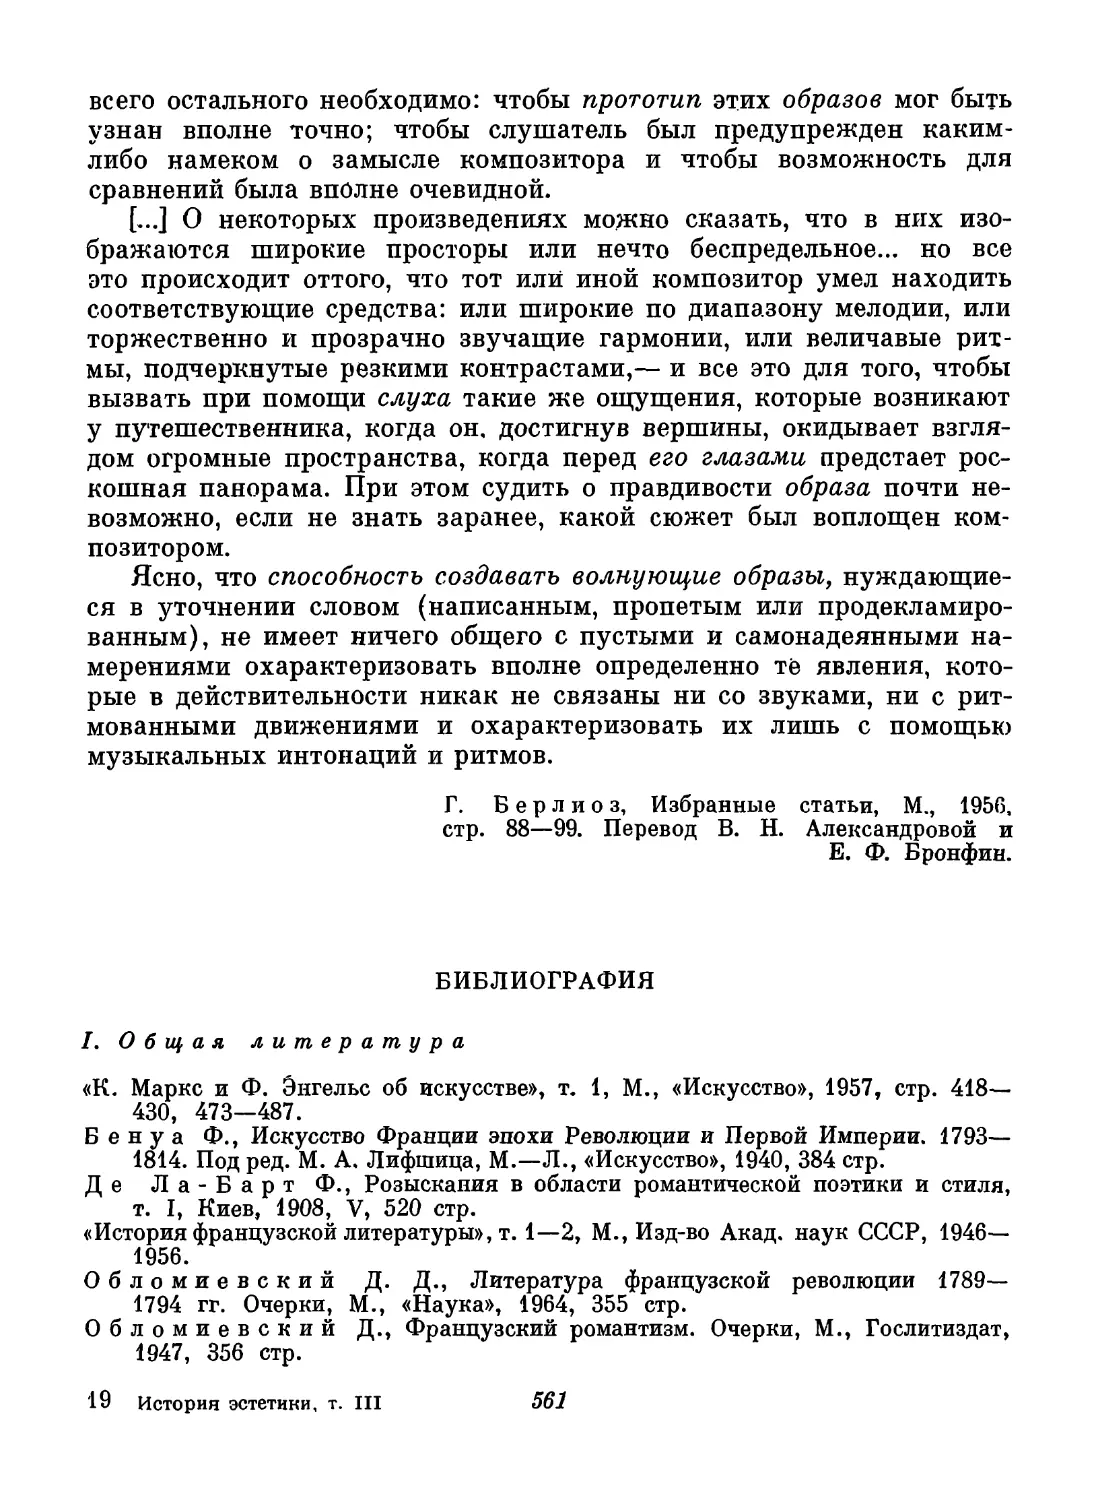 Библиография. Составители П. Р. Заборов и А. В. Паевская